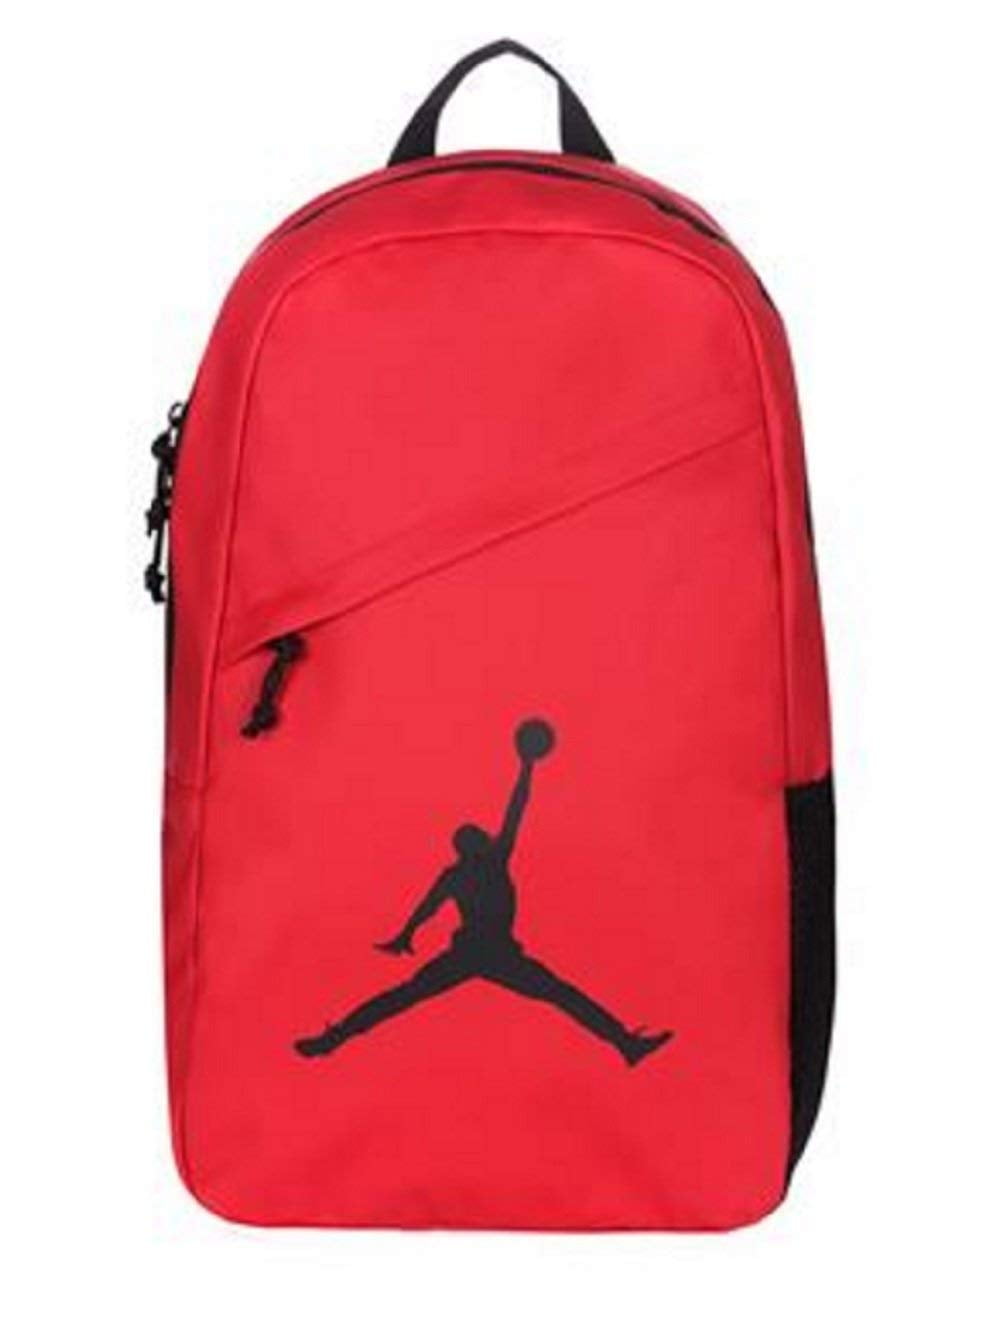 Nike Air Jordan Crossover School Backpack (Gym Red) - Walmart.com